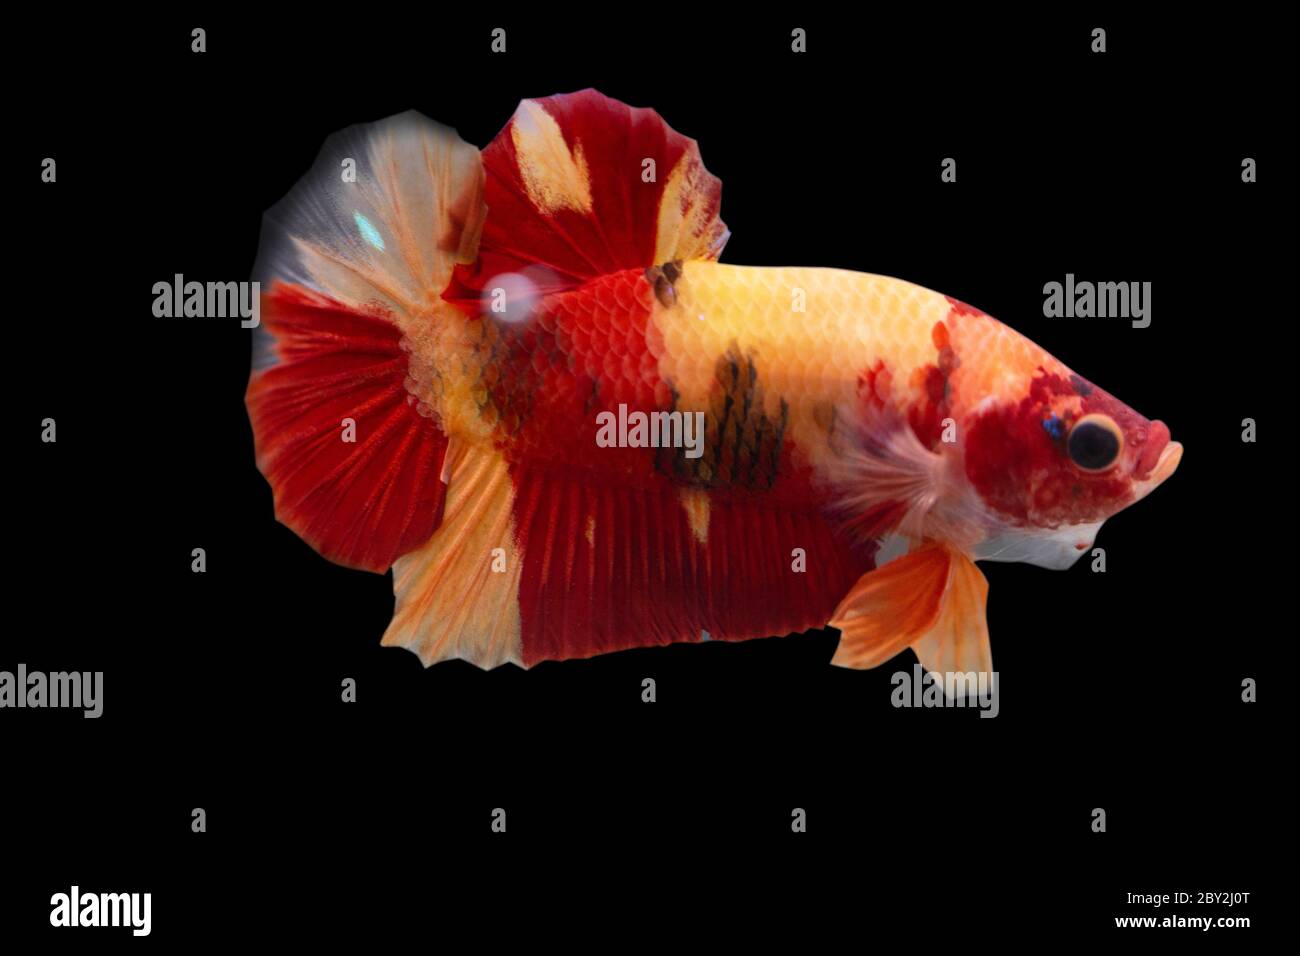 Betta Koi Nemo Halfmoon Plakat HMPK Male or Plakat Fighting Fish Splendens  on Black Background Stock Photo